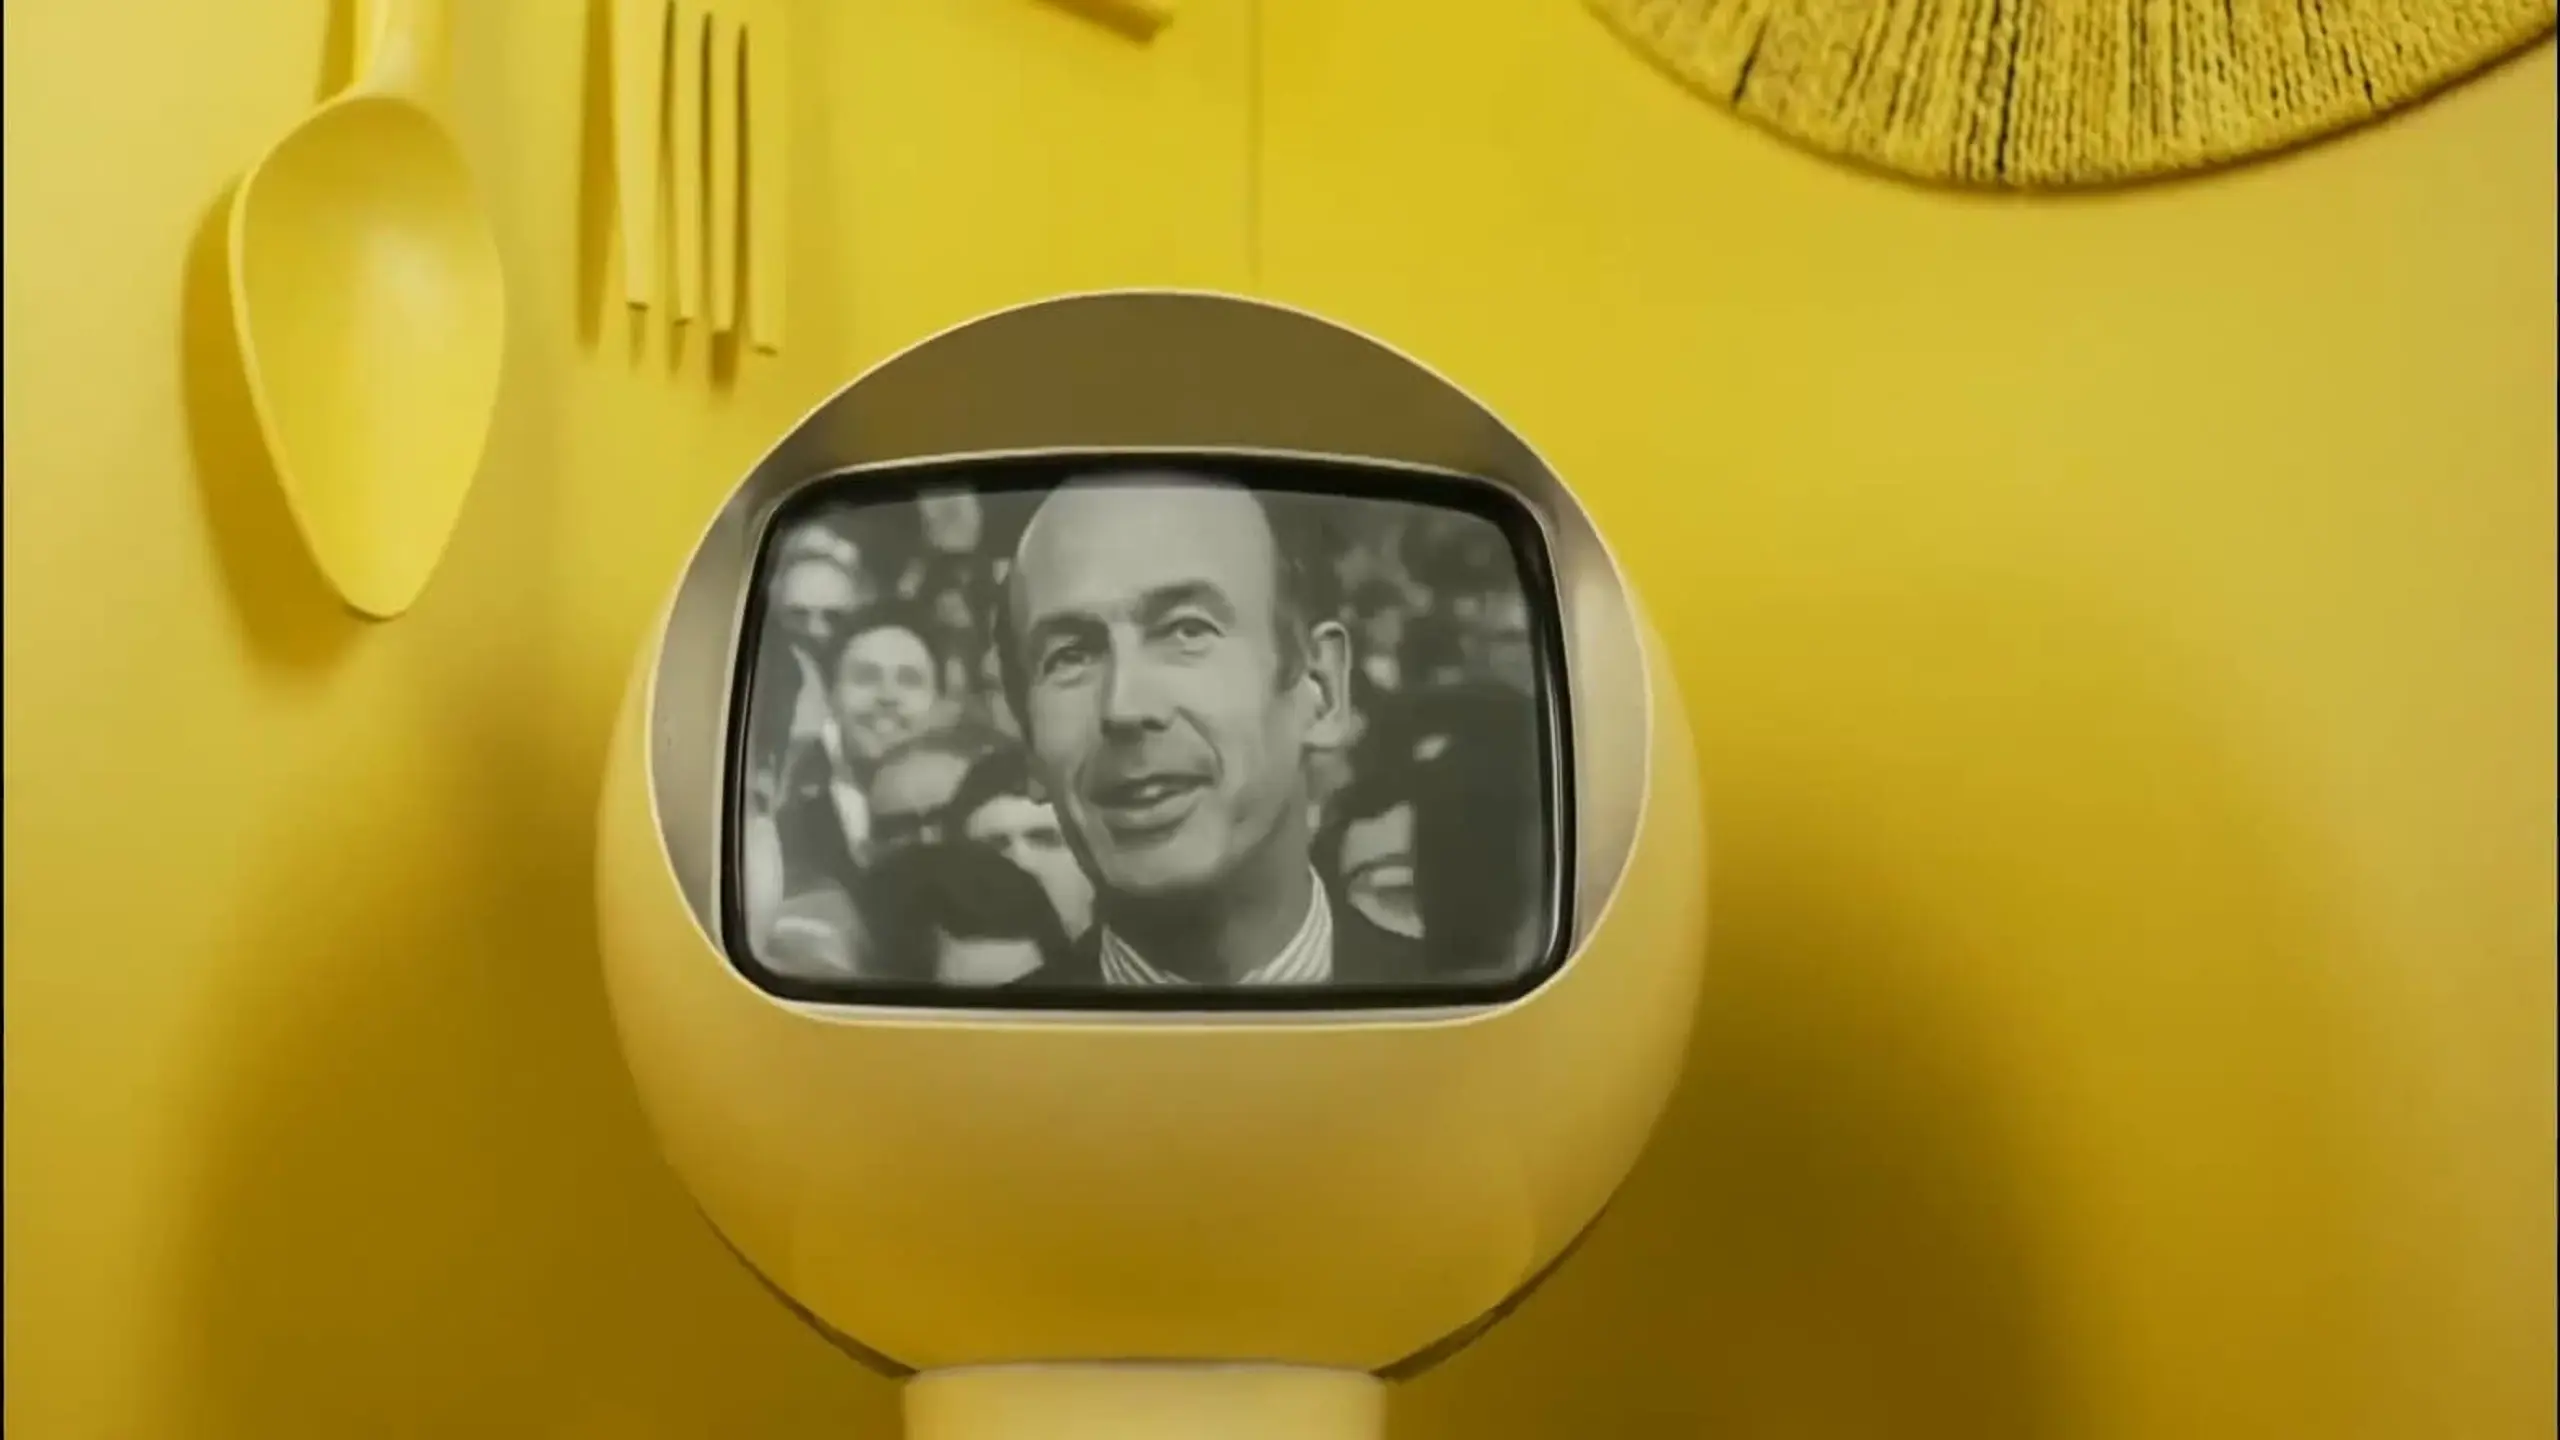 La TV des 70's Quand Giscard était Président